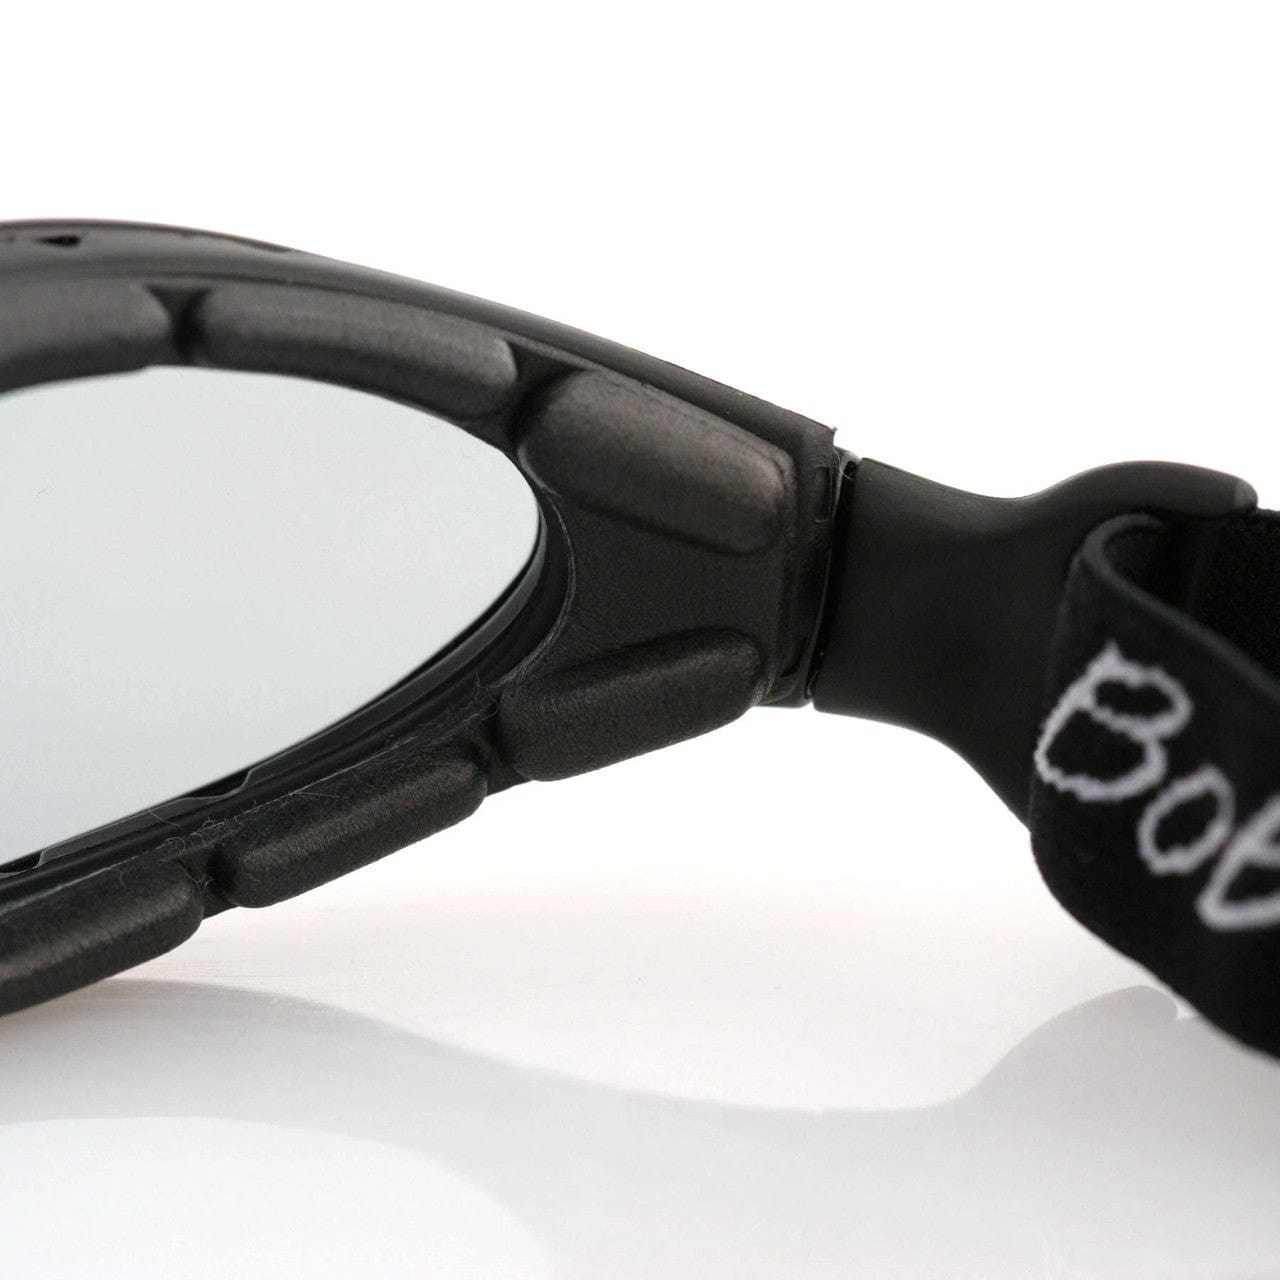 Bobster Road Master Photochromic Lens Motorcycle Sunglasses BDG001 Inside Lens View